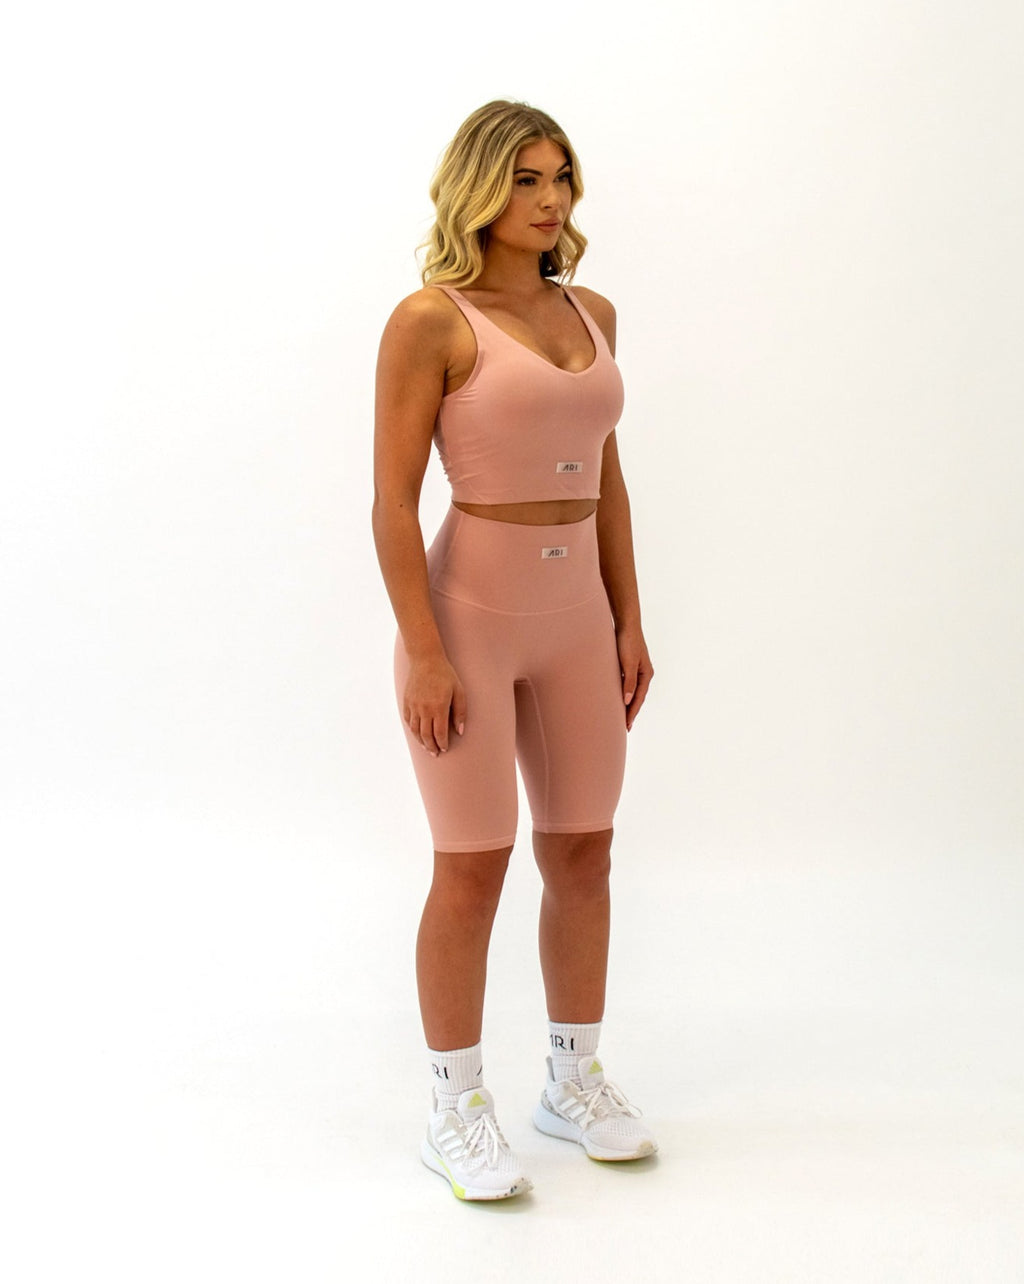 Pink Gym Shorts